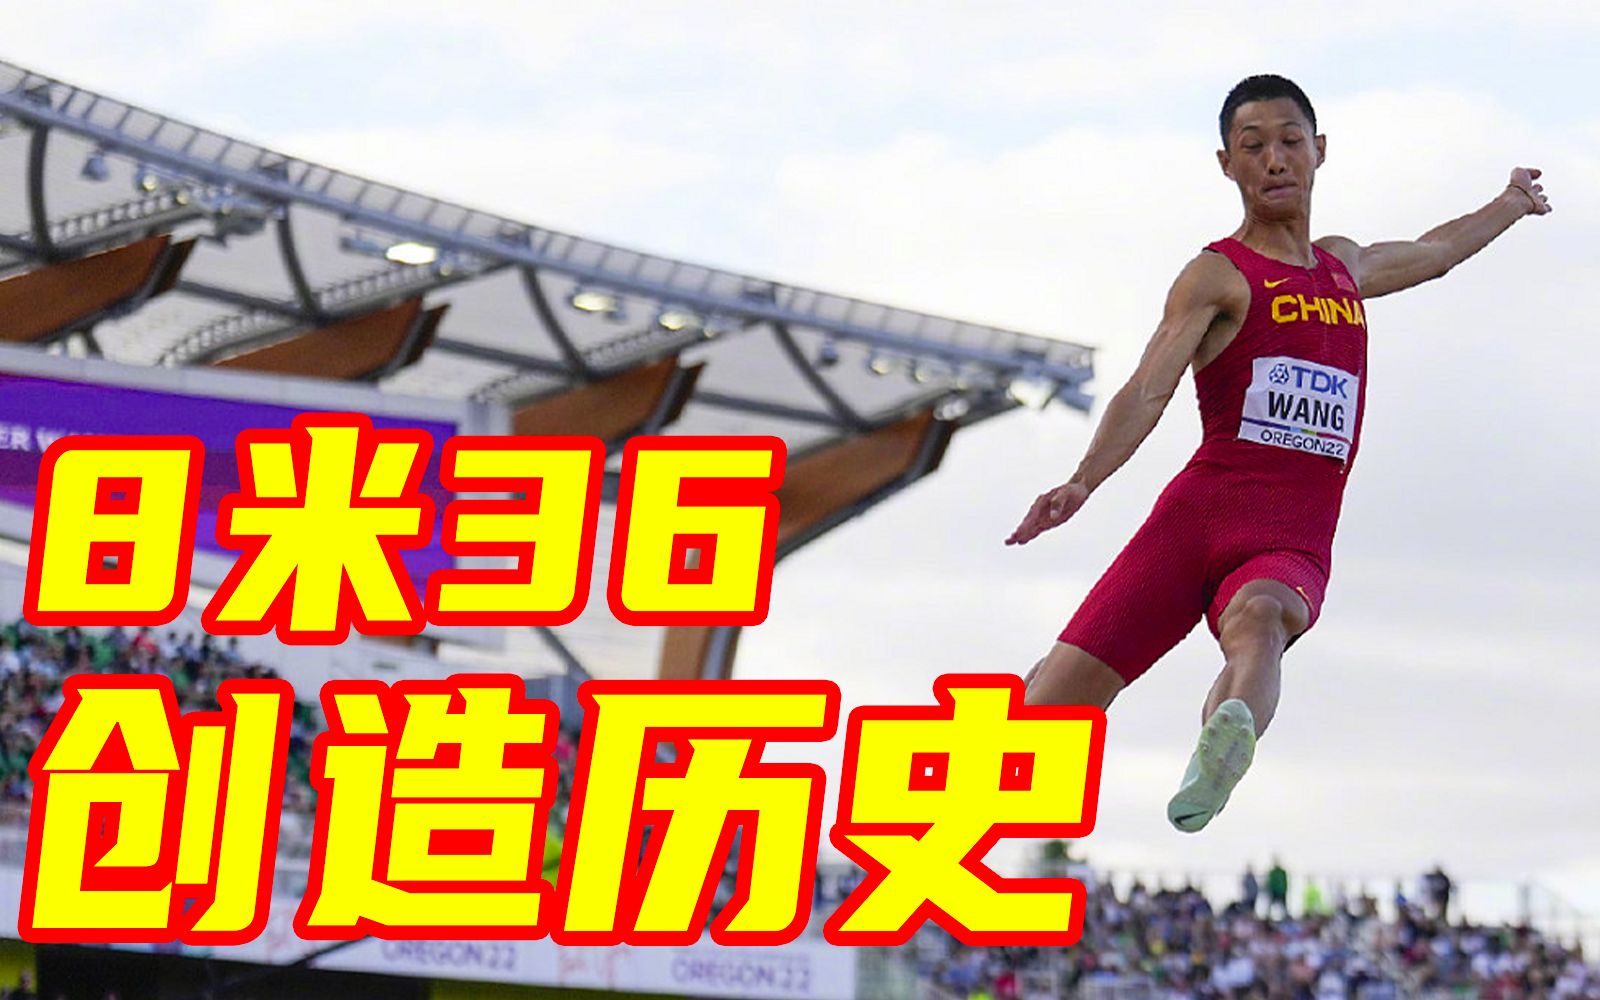 8米36！王嘉男夺世锦赛男子跳远金牌，创中国队历史